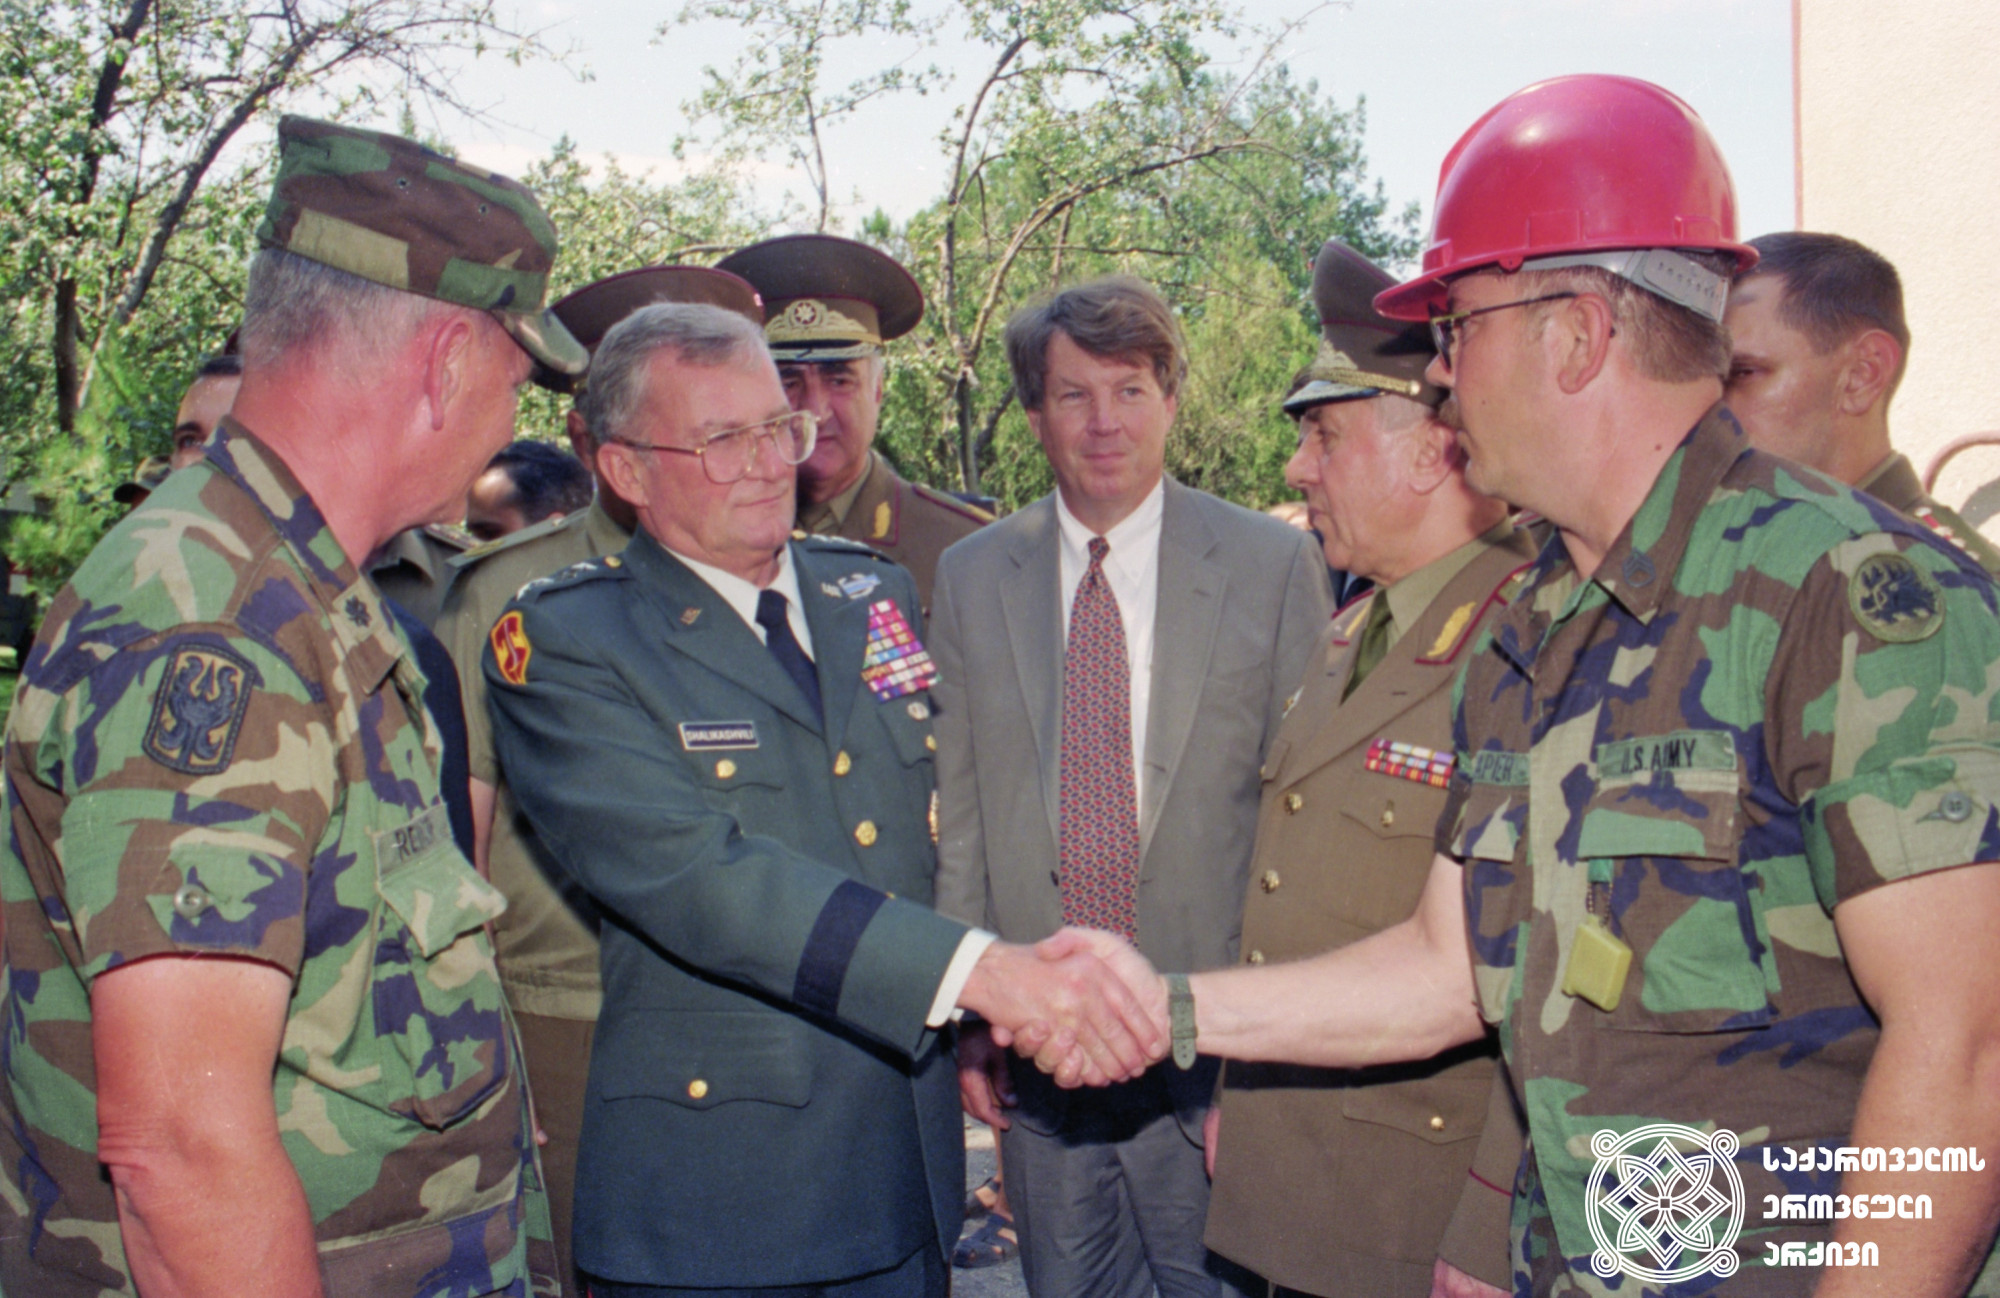 შეერთებული შტატების არმიის გენერალ ჯონ მალხაზ შალიკაშვილის ვიზიტი საქართველოში. <br>
1995 წელი. <br>
სერგო ედიშერაშვილის ფოტო. <br>

United States Army General John Malchase Shalikashvili paid a visit to Georgia. <br>
1995. <br>
Photo by Sergo Edisherashvili.